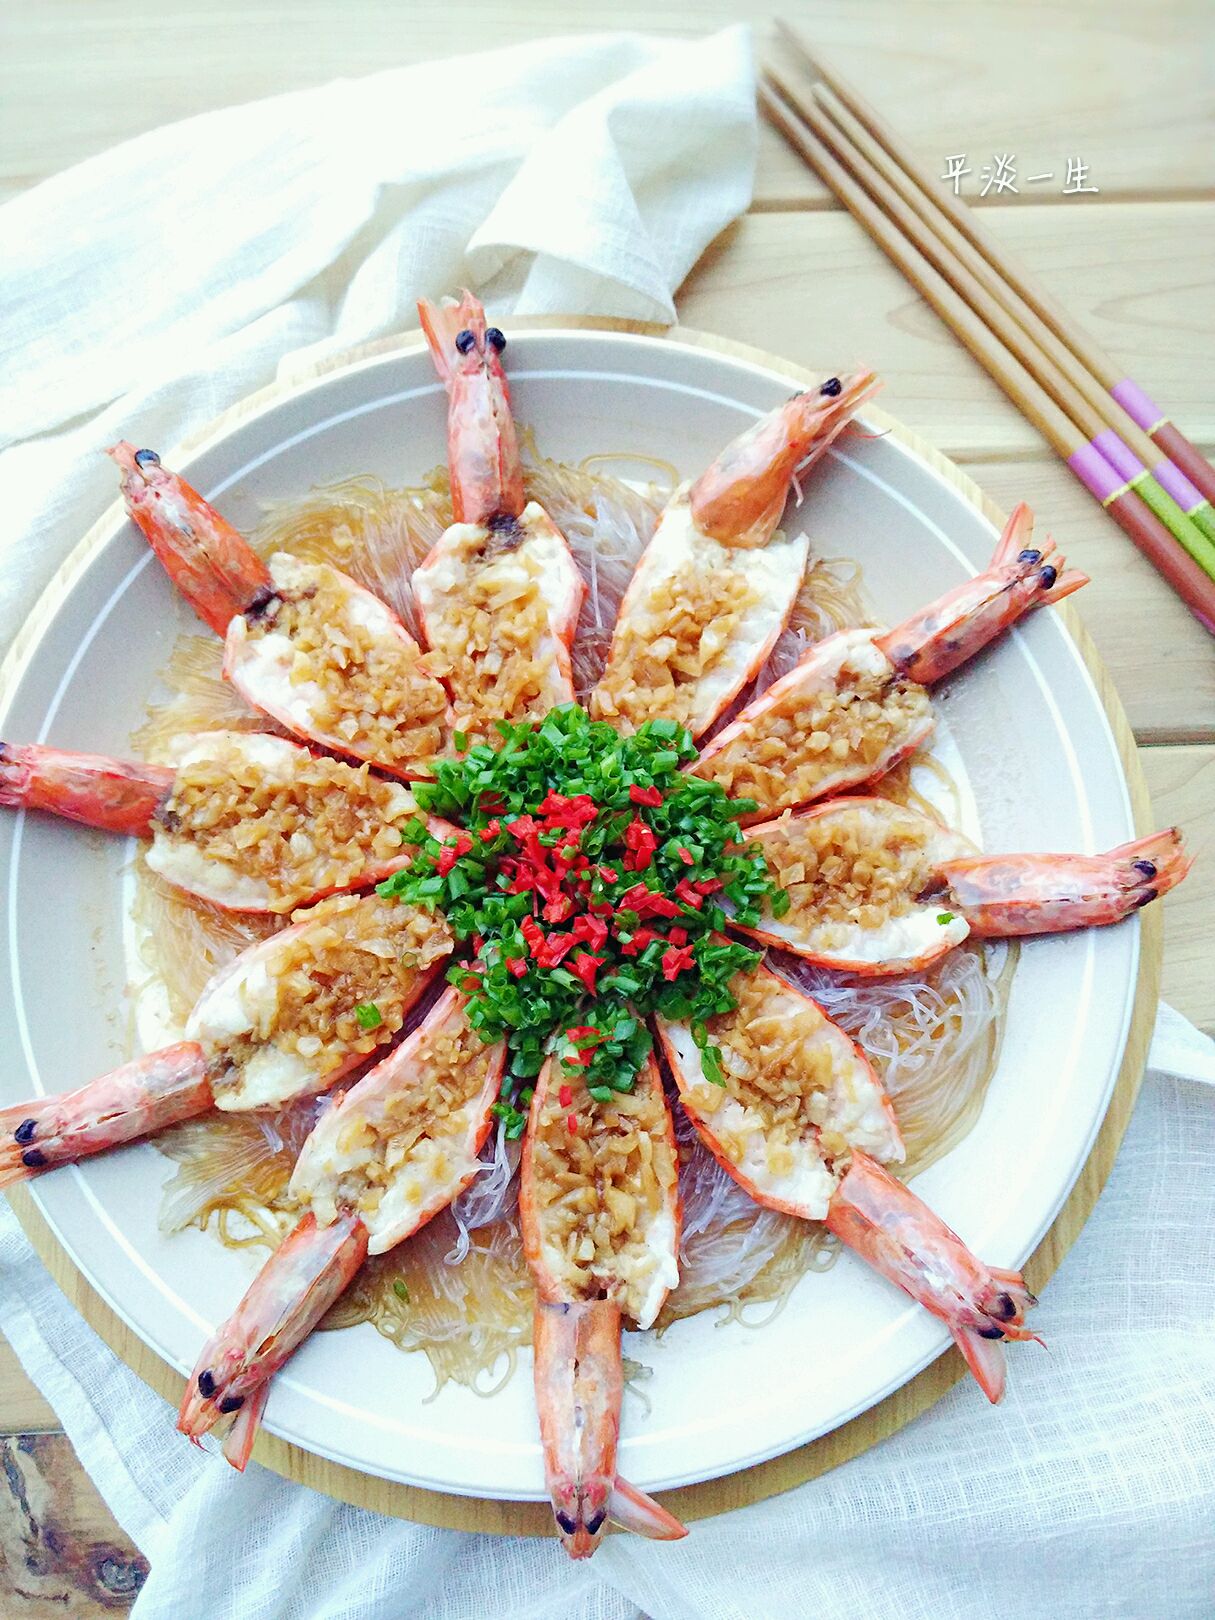 夏日夜宵必备蒜蓉虾，蒜香扑鼻，超好吃 - 美食杰 - 美食,菜谱 - 中国最全的家常菜谱美食网